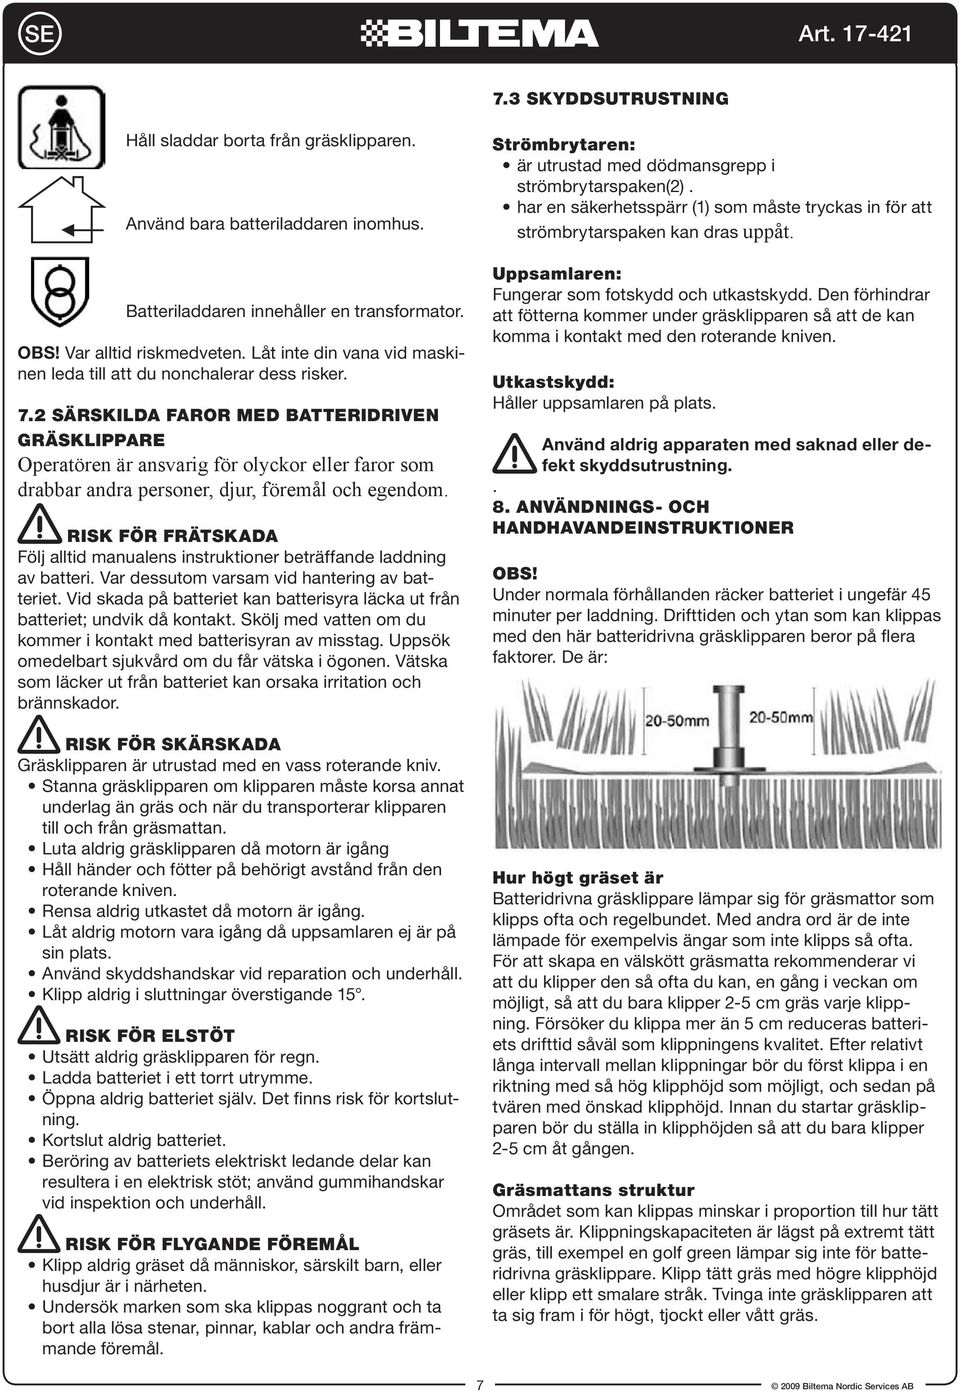 2 Särskilda faror med batteridriven gräsklippare Operatören är ansvarig för olyckor eller faror som drabbar andra personer, djur, föremål och egendom.